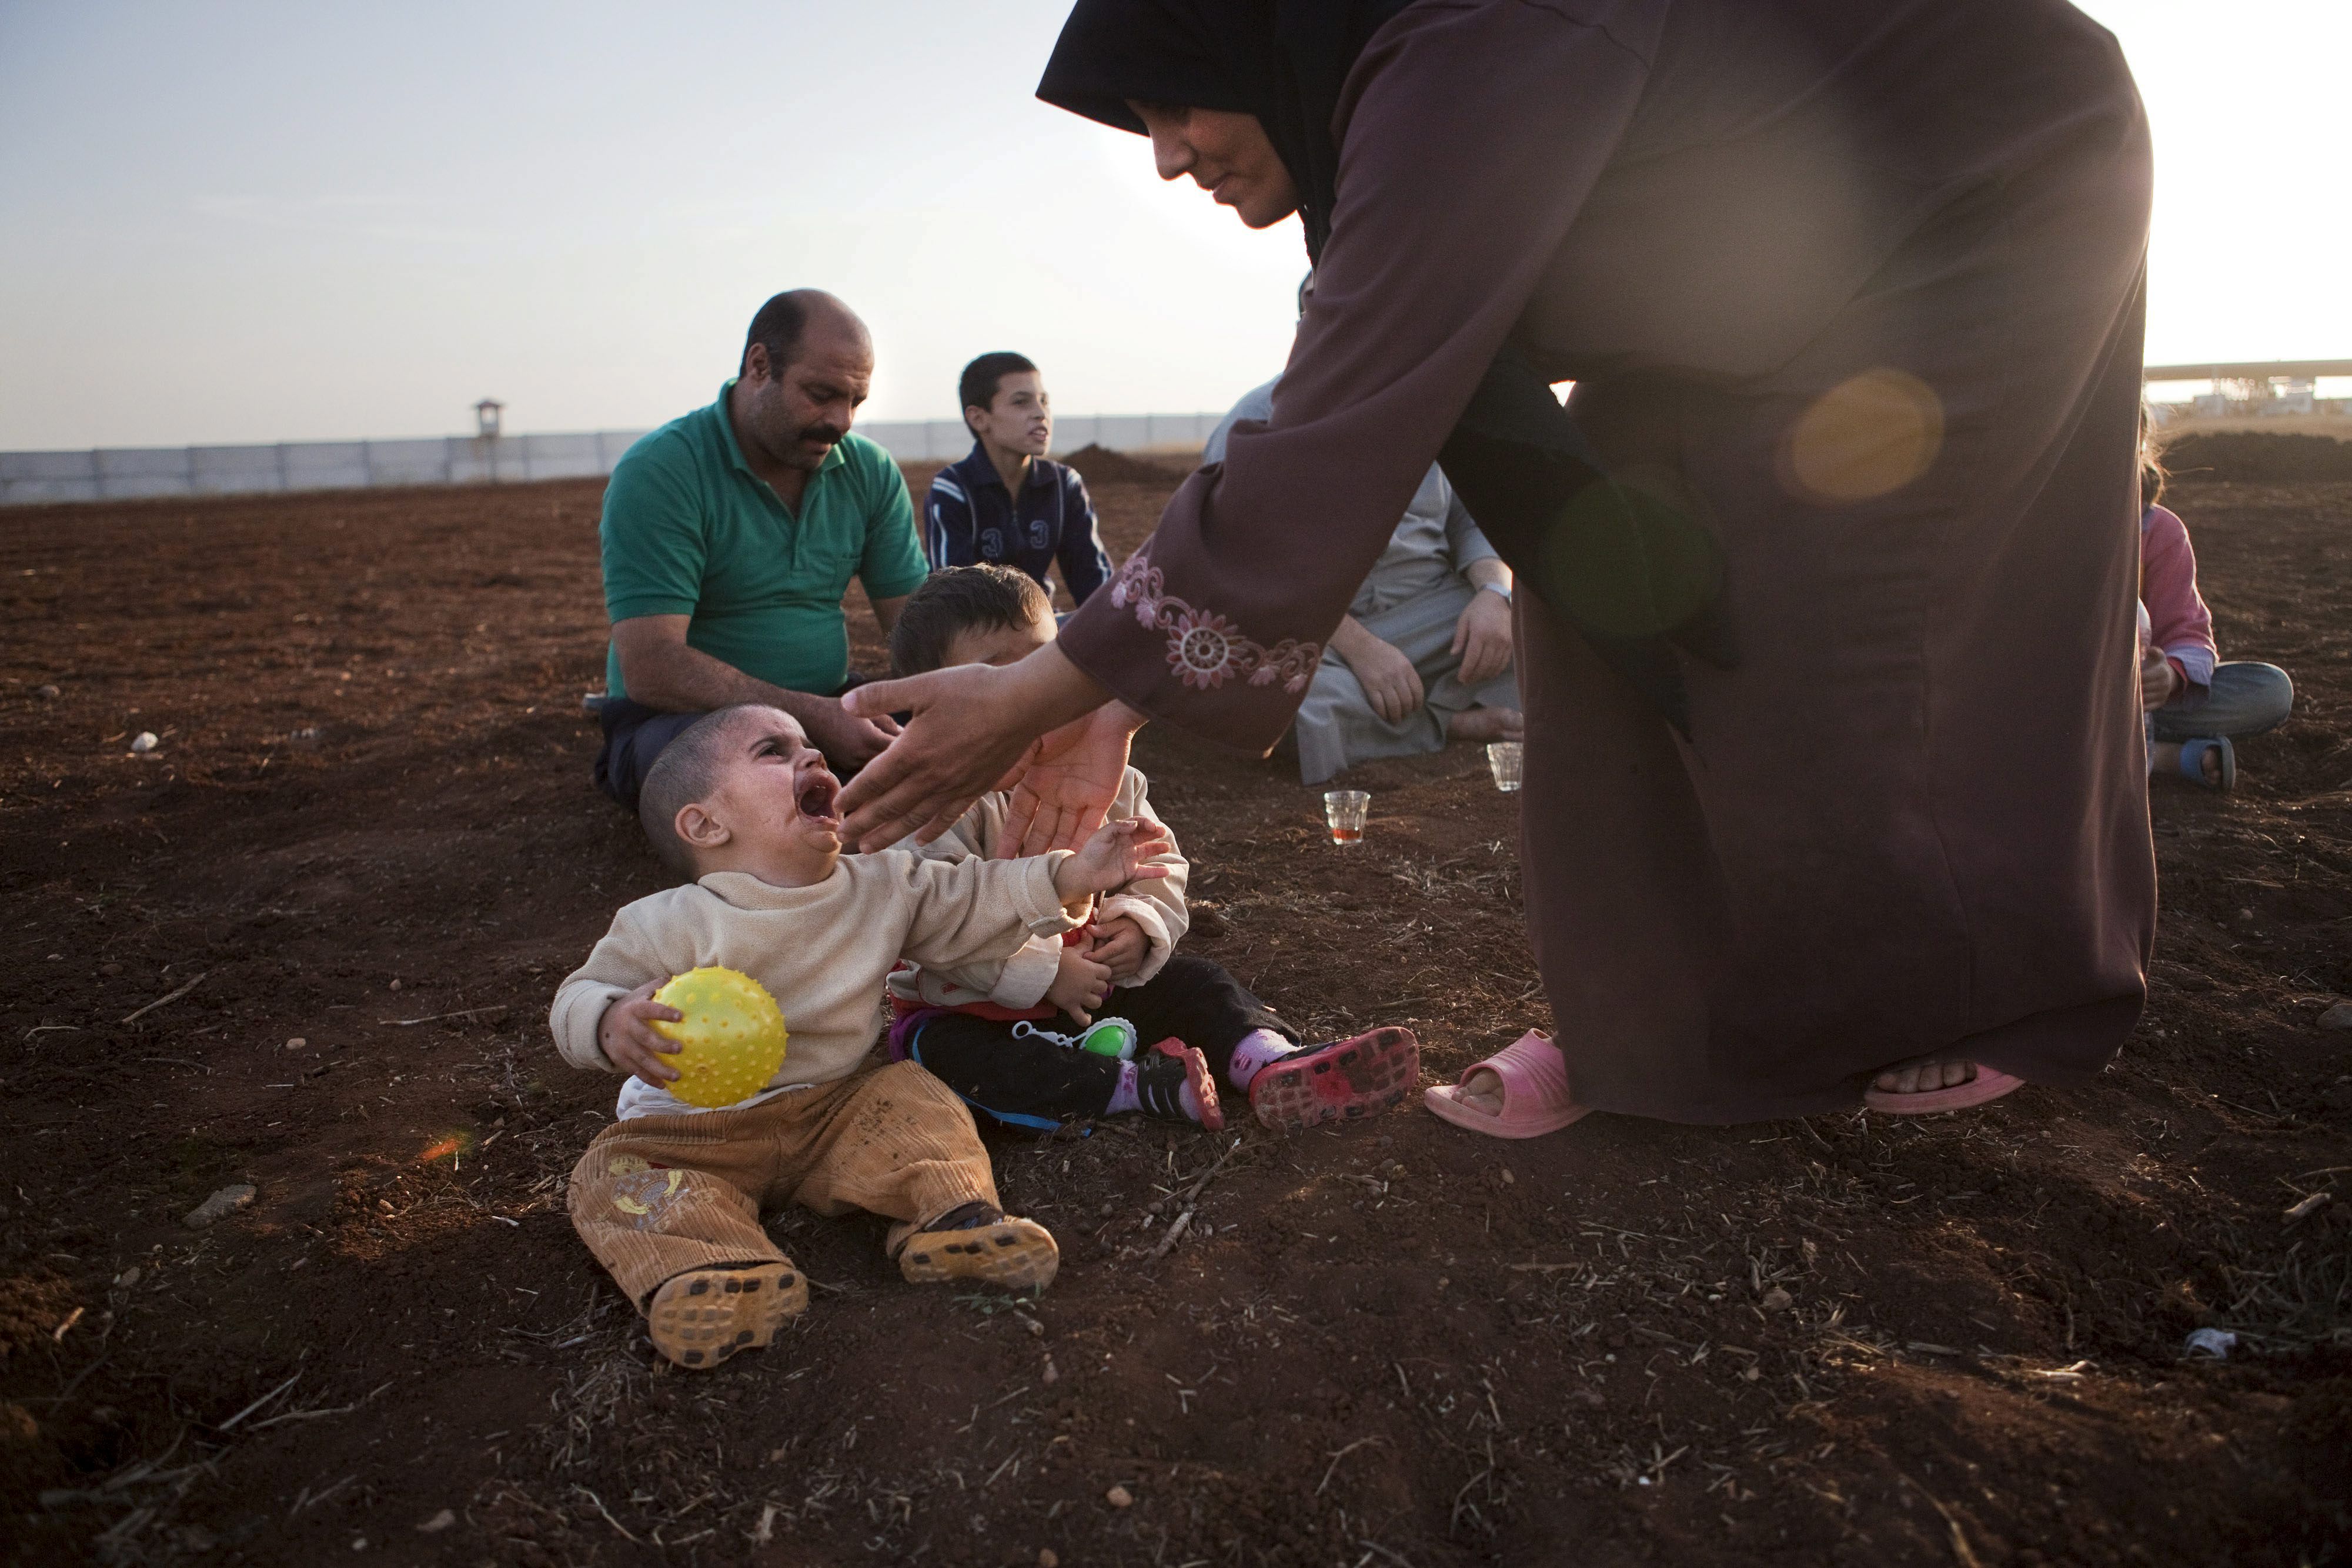 Una refugiada siria tiende su mano hacia unos niños en un campamento de personas desplazadas en la frontera turco-siria cerca de Azaz, Siria.